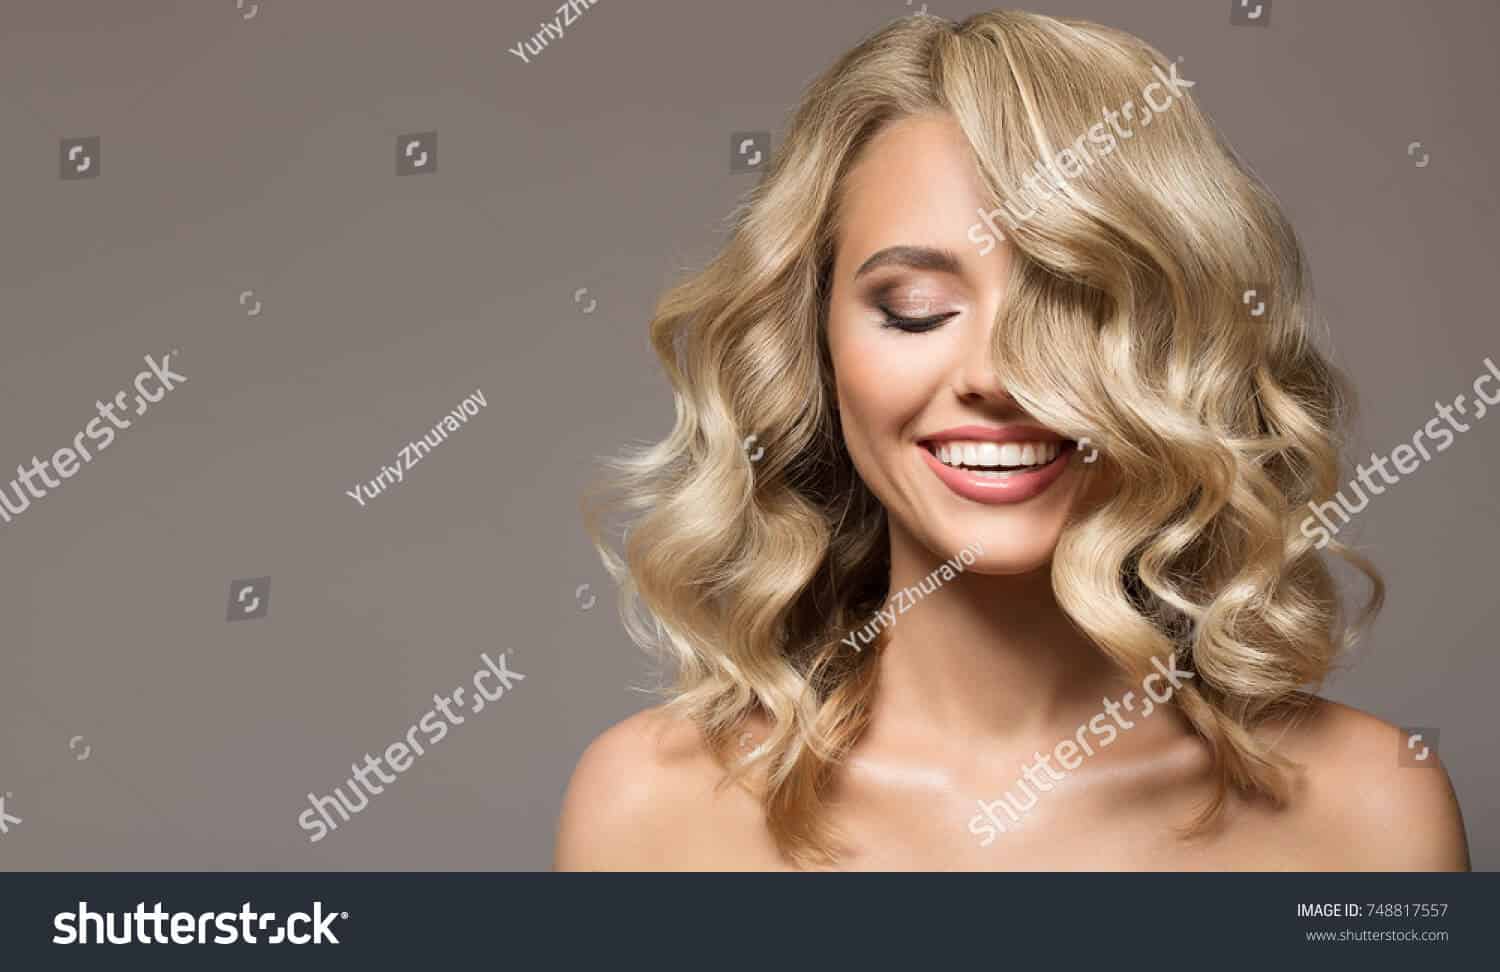 11 triệu hình ảnh mái tóc của các cô gái trẻ chất lượng cao trên Shutterstock11 triệu hình ảnh mái tóc của các cô gái trẻ chất lượng cao trên Shutterstock